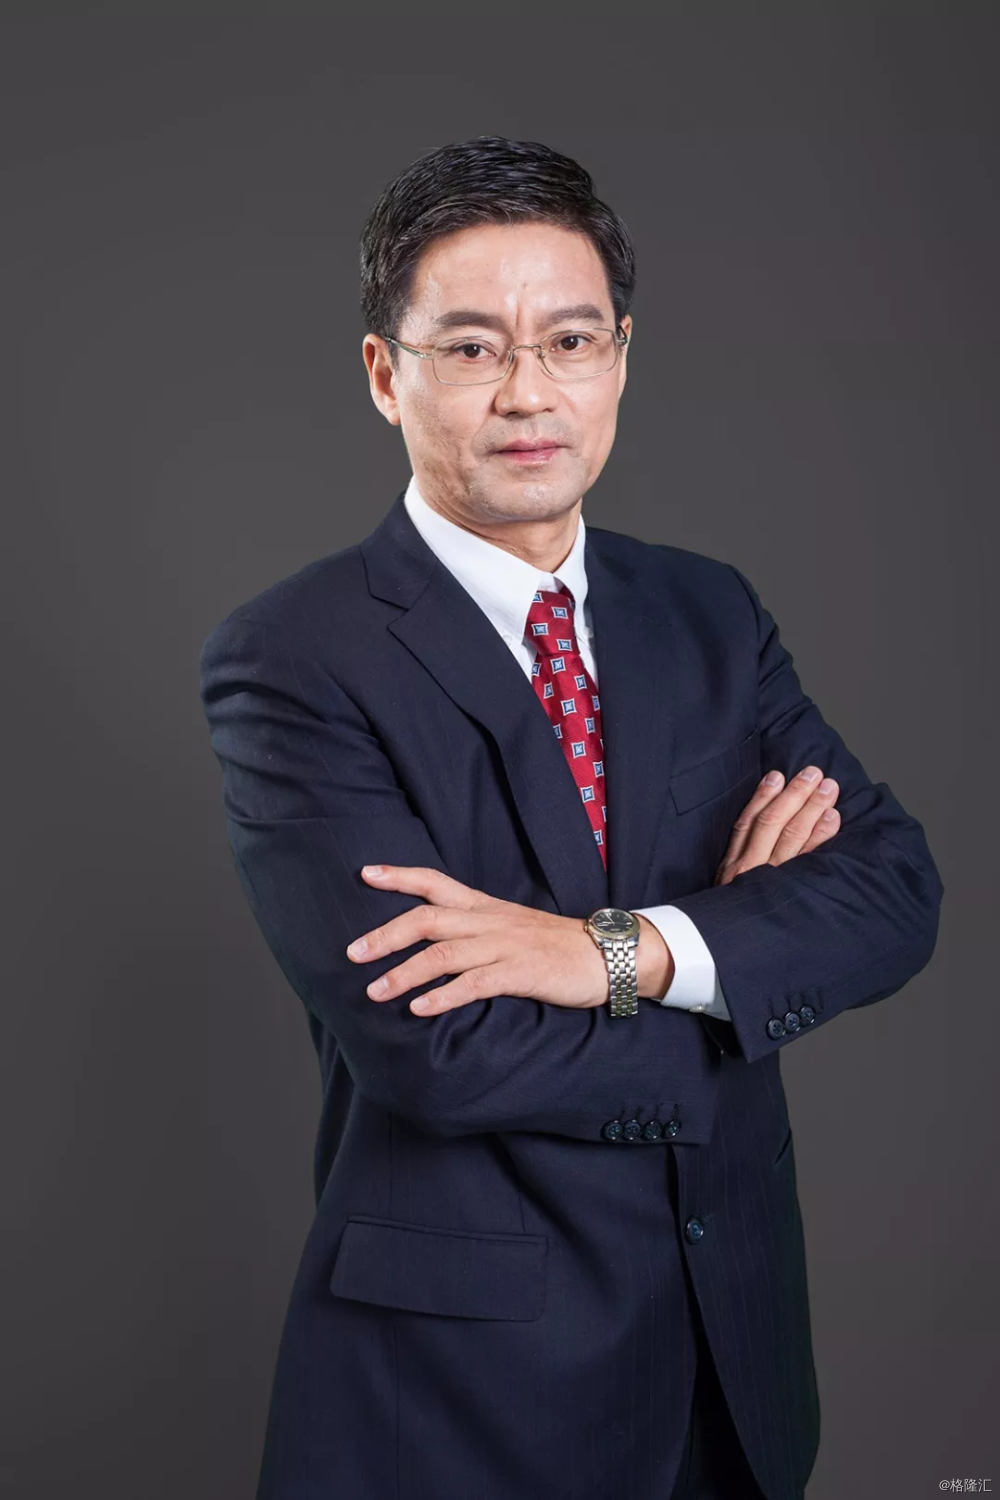 金斯瑞生物科技创始人兼CEO章方良博士照片